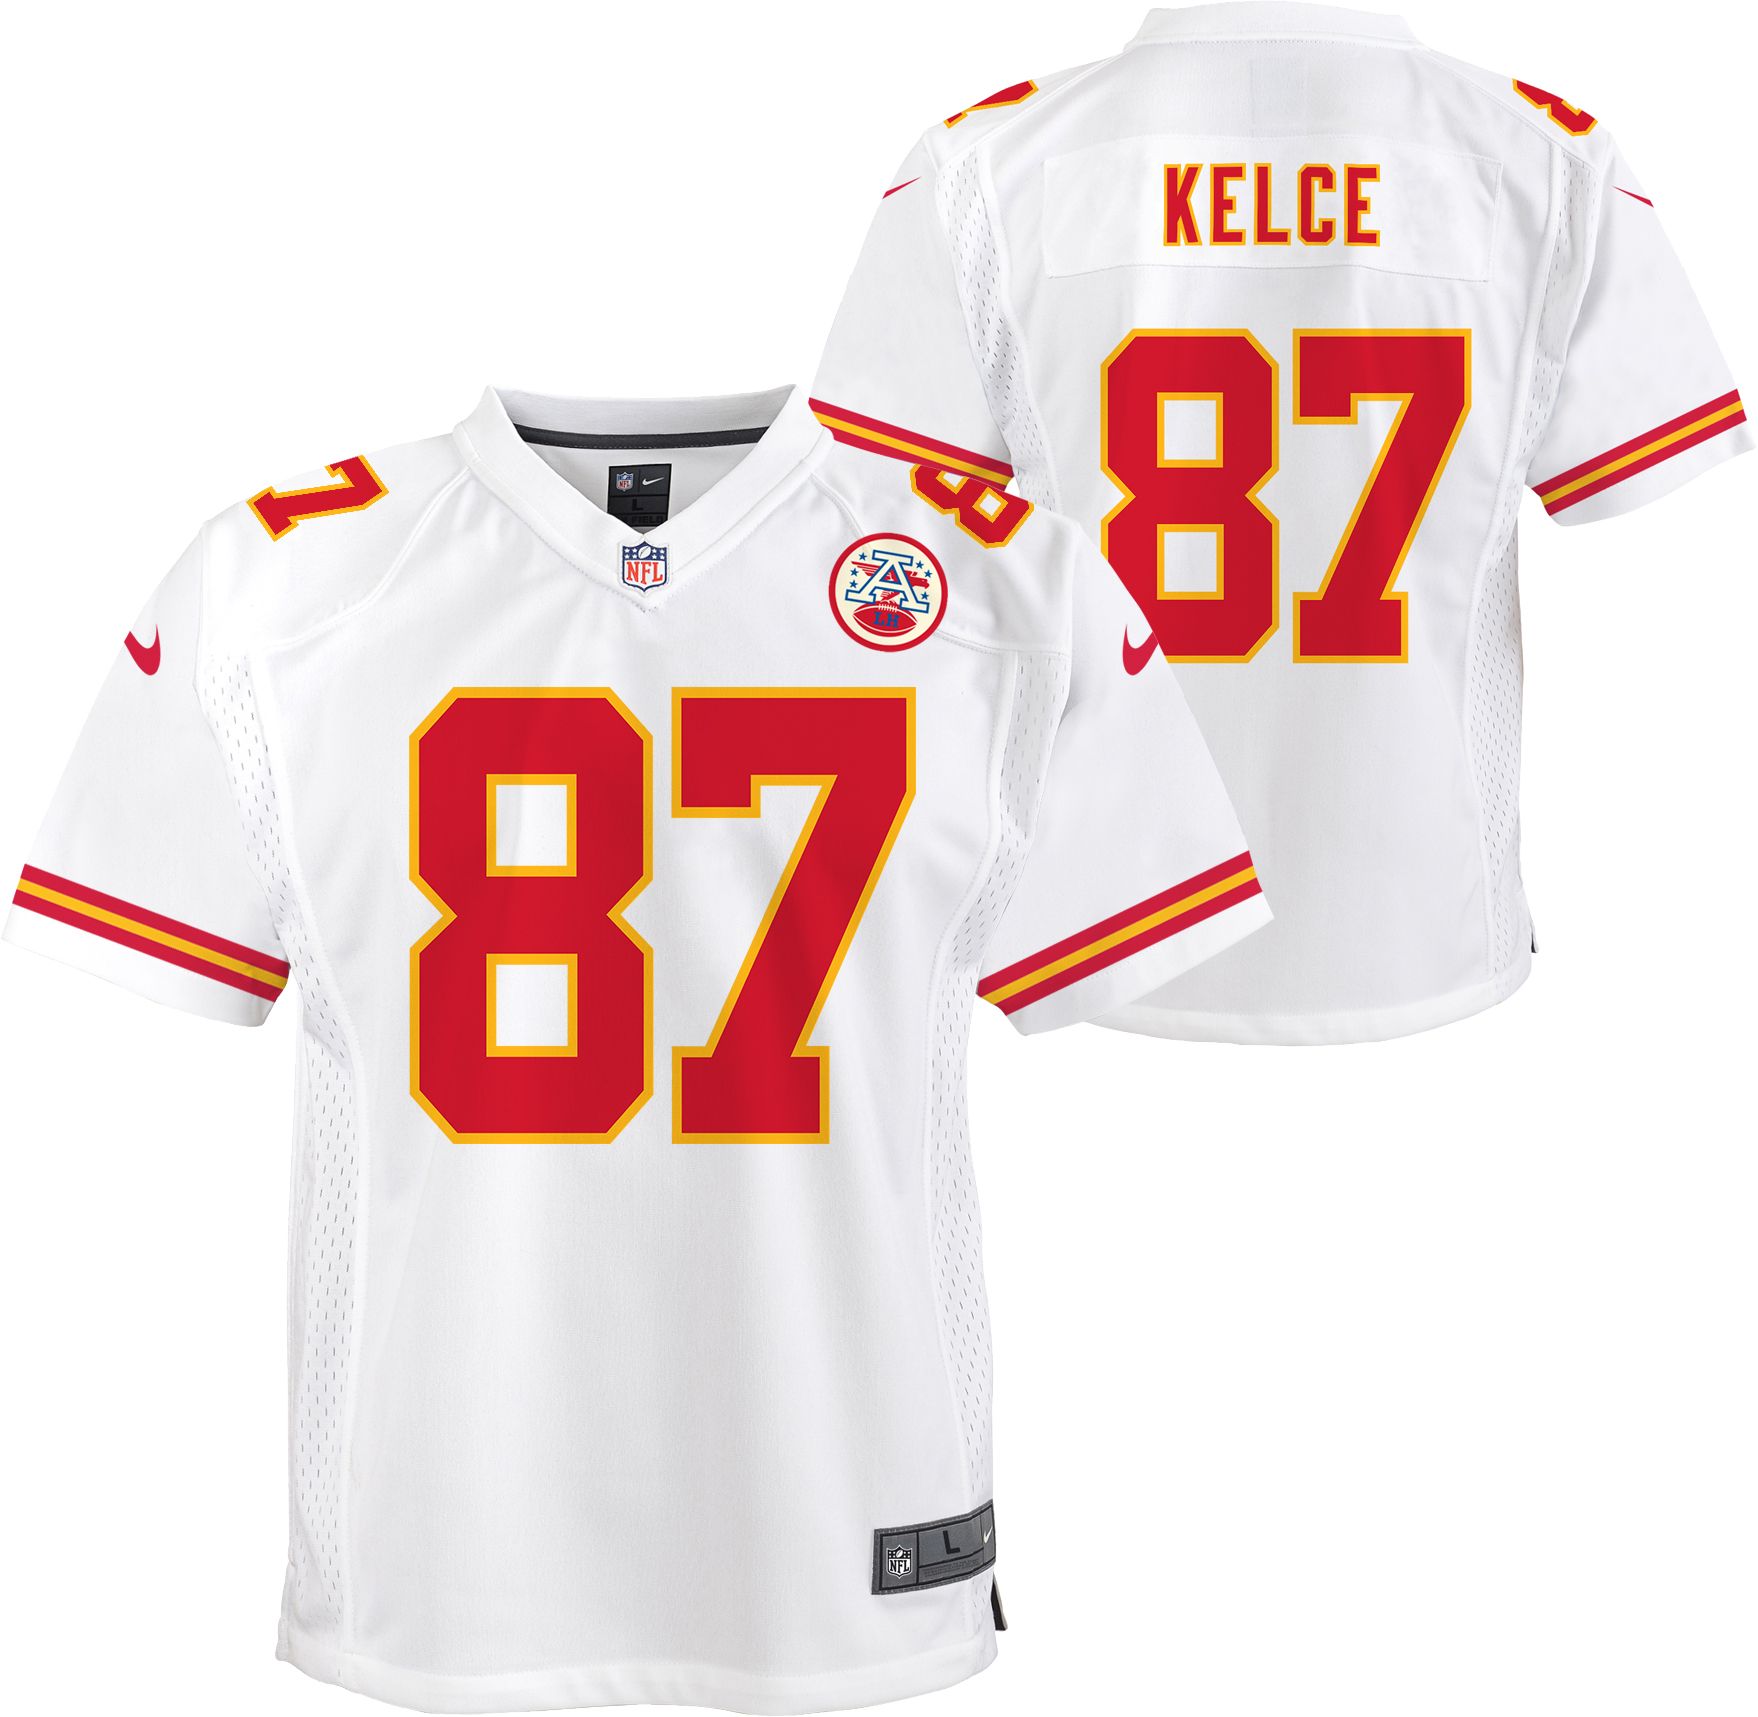 Travis Kelce Chiefs jersey